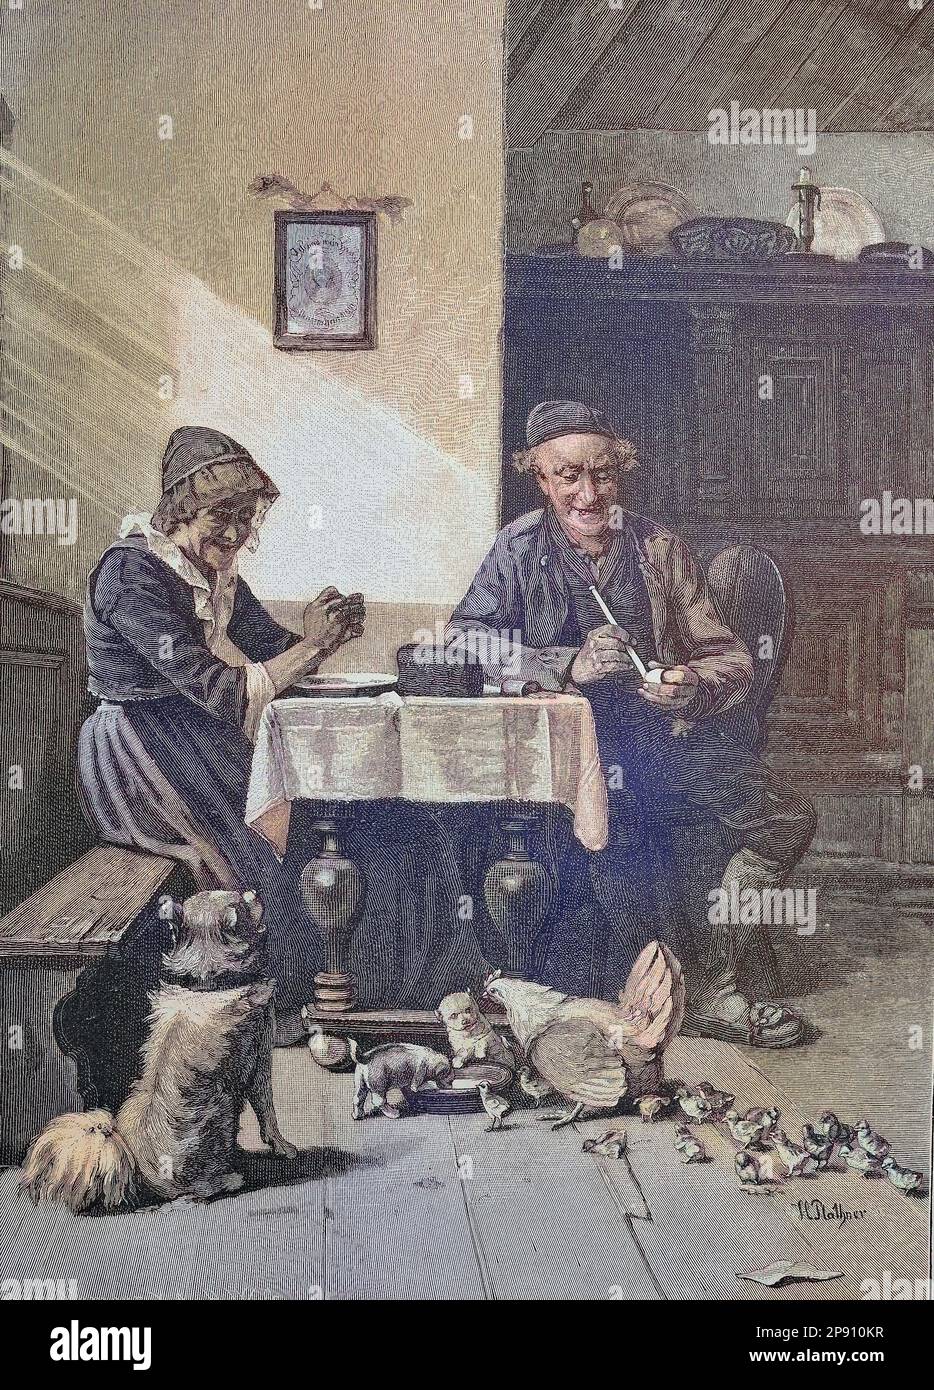 Fütterung, in der Wohnstube eines Bauernhofs, mit Hund, Hundewelpen, Hühnern und Küken bei der Fütterung, Historisch, digital restaurierte Reproduktion von einer Vorlage aus dem 19. Jahrhundert Foto Stock